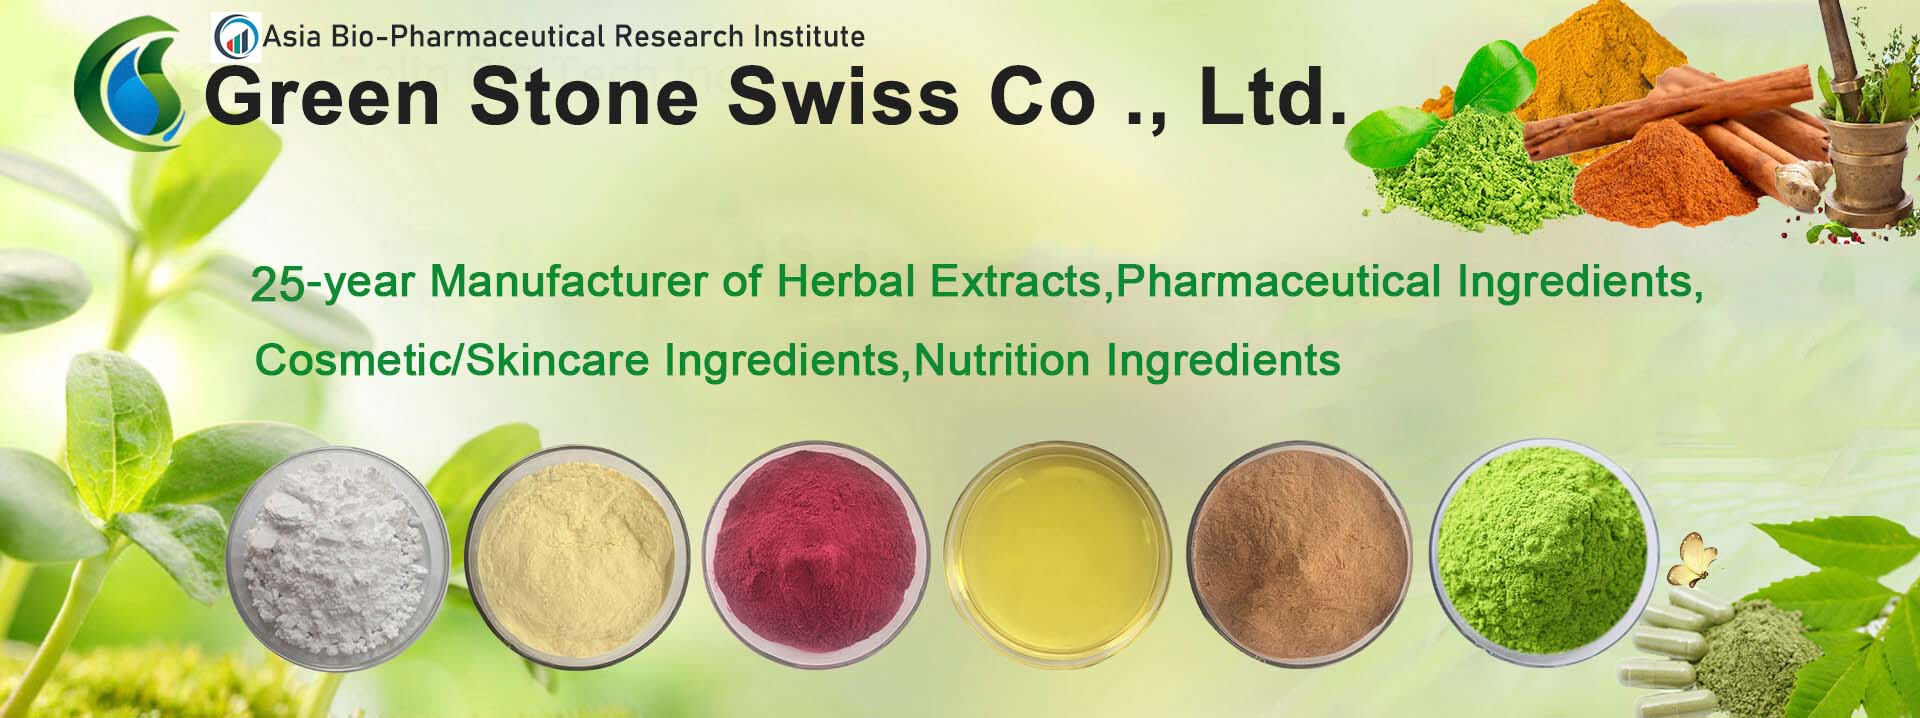 Fabricante de extratos de ervas, ingredientes farmacêuticos, ingredientes para cosméticos / cuidados com a pele, ingredientes nutricionais há 25 anos